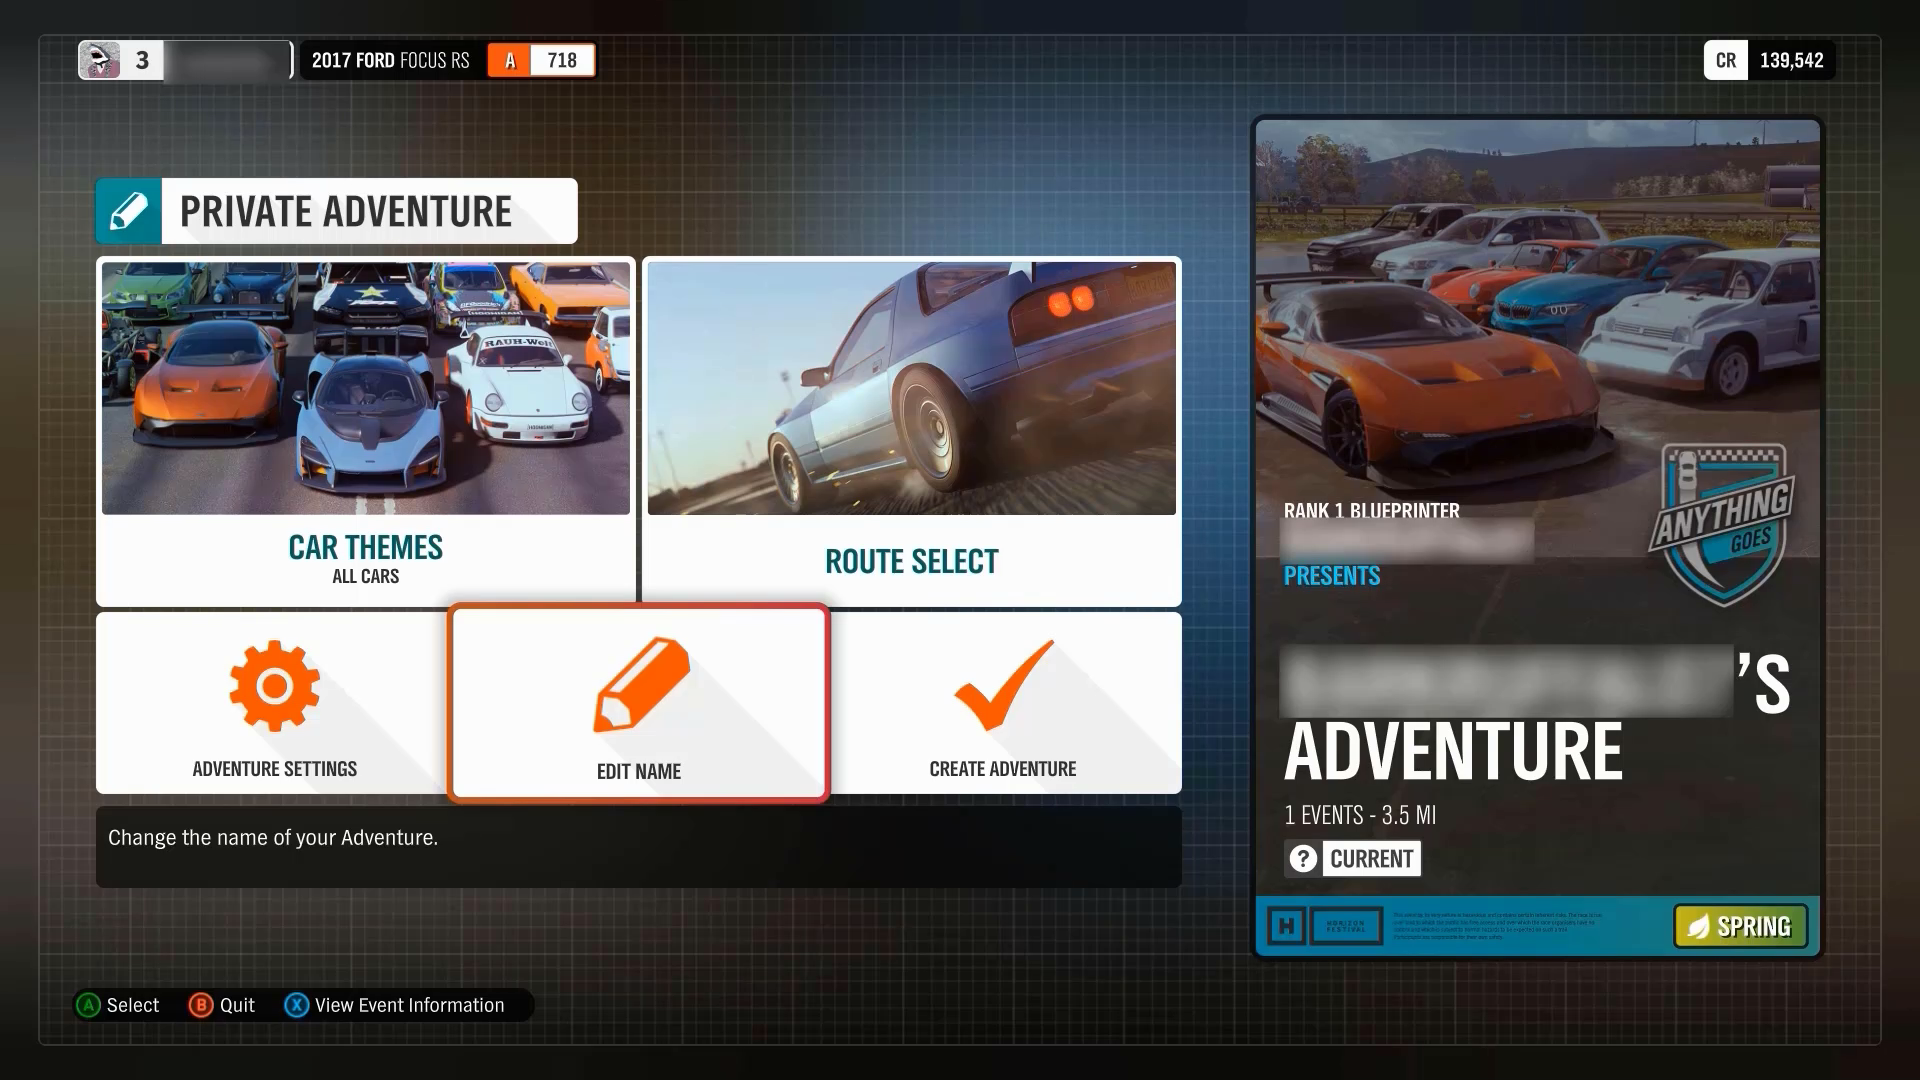 [プライベート アドベンチャー] 画面が表示されている Forza Horizon 4 のスクリーンショット。[名前の編集] が選択され、関数を説明する説明が表示されます。